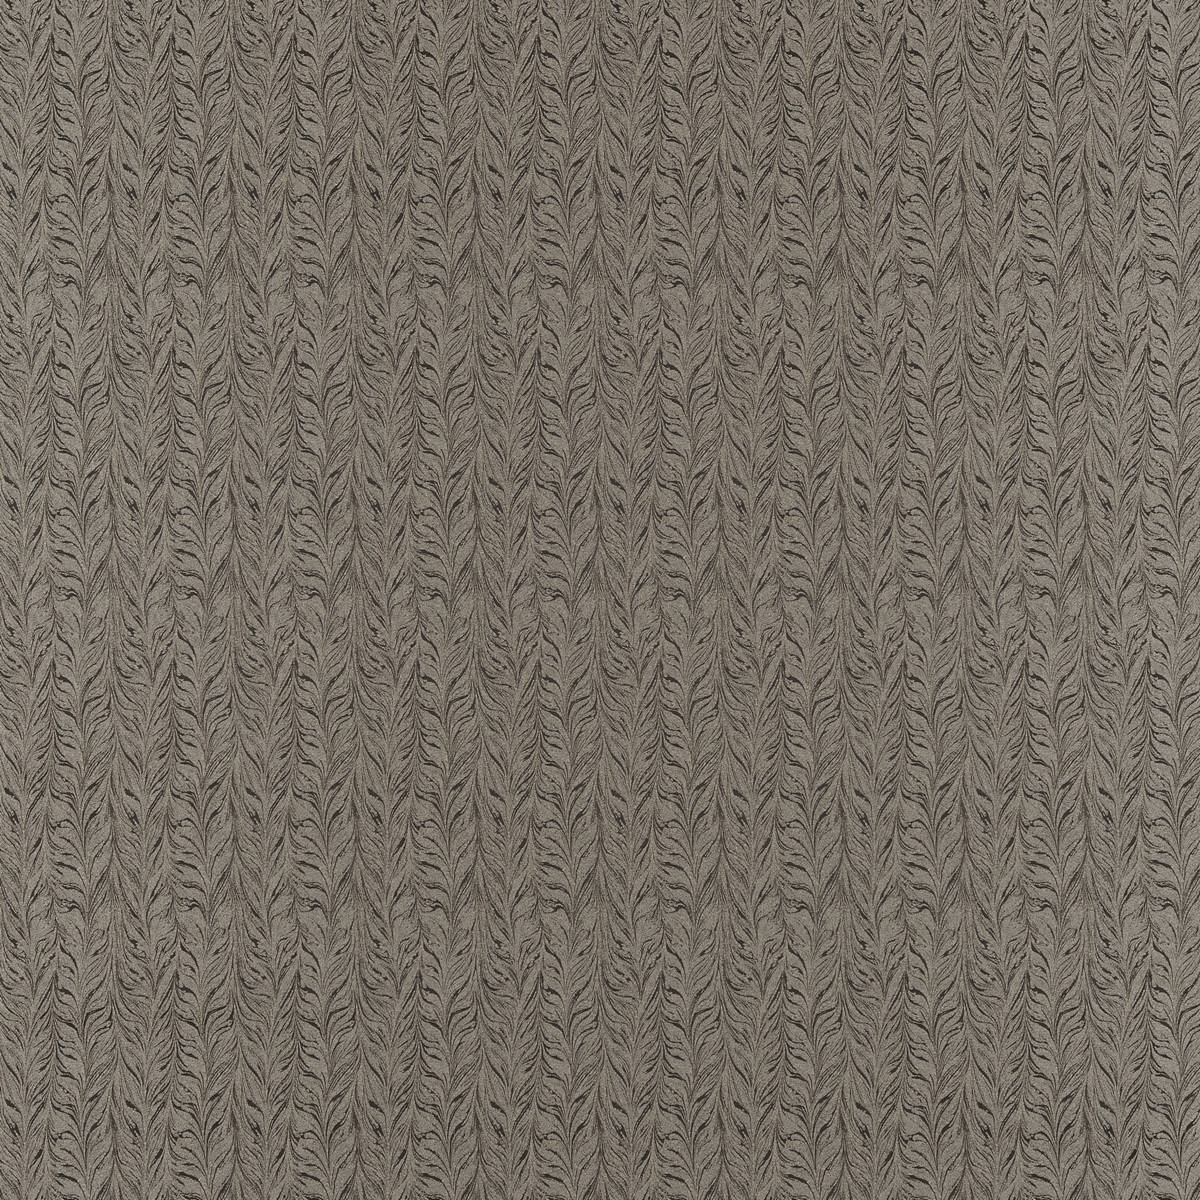 Ebru Charcoal Fabric by Zoffany